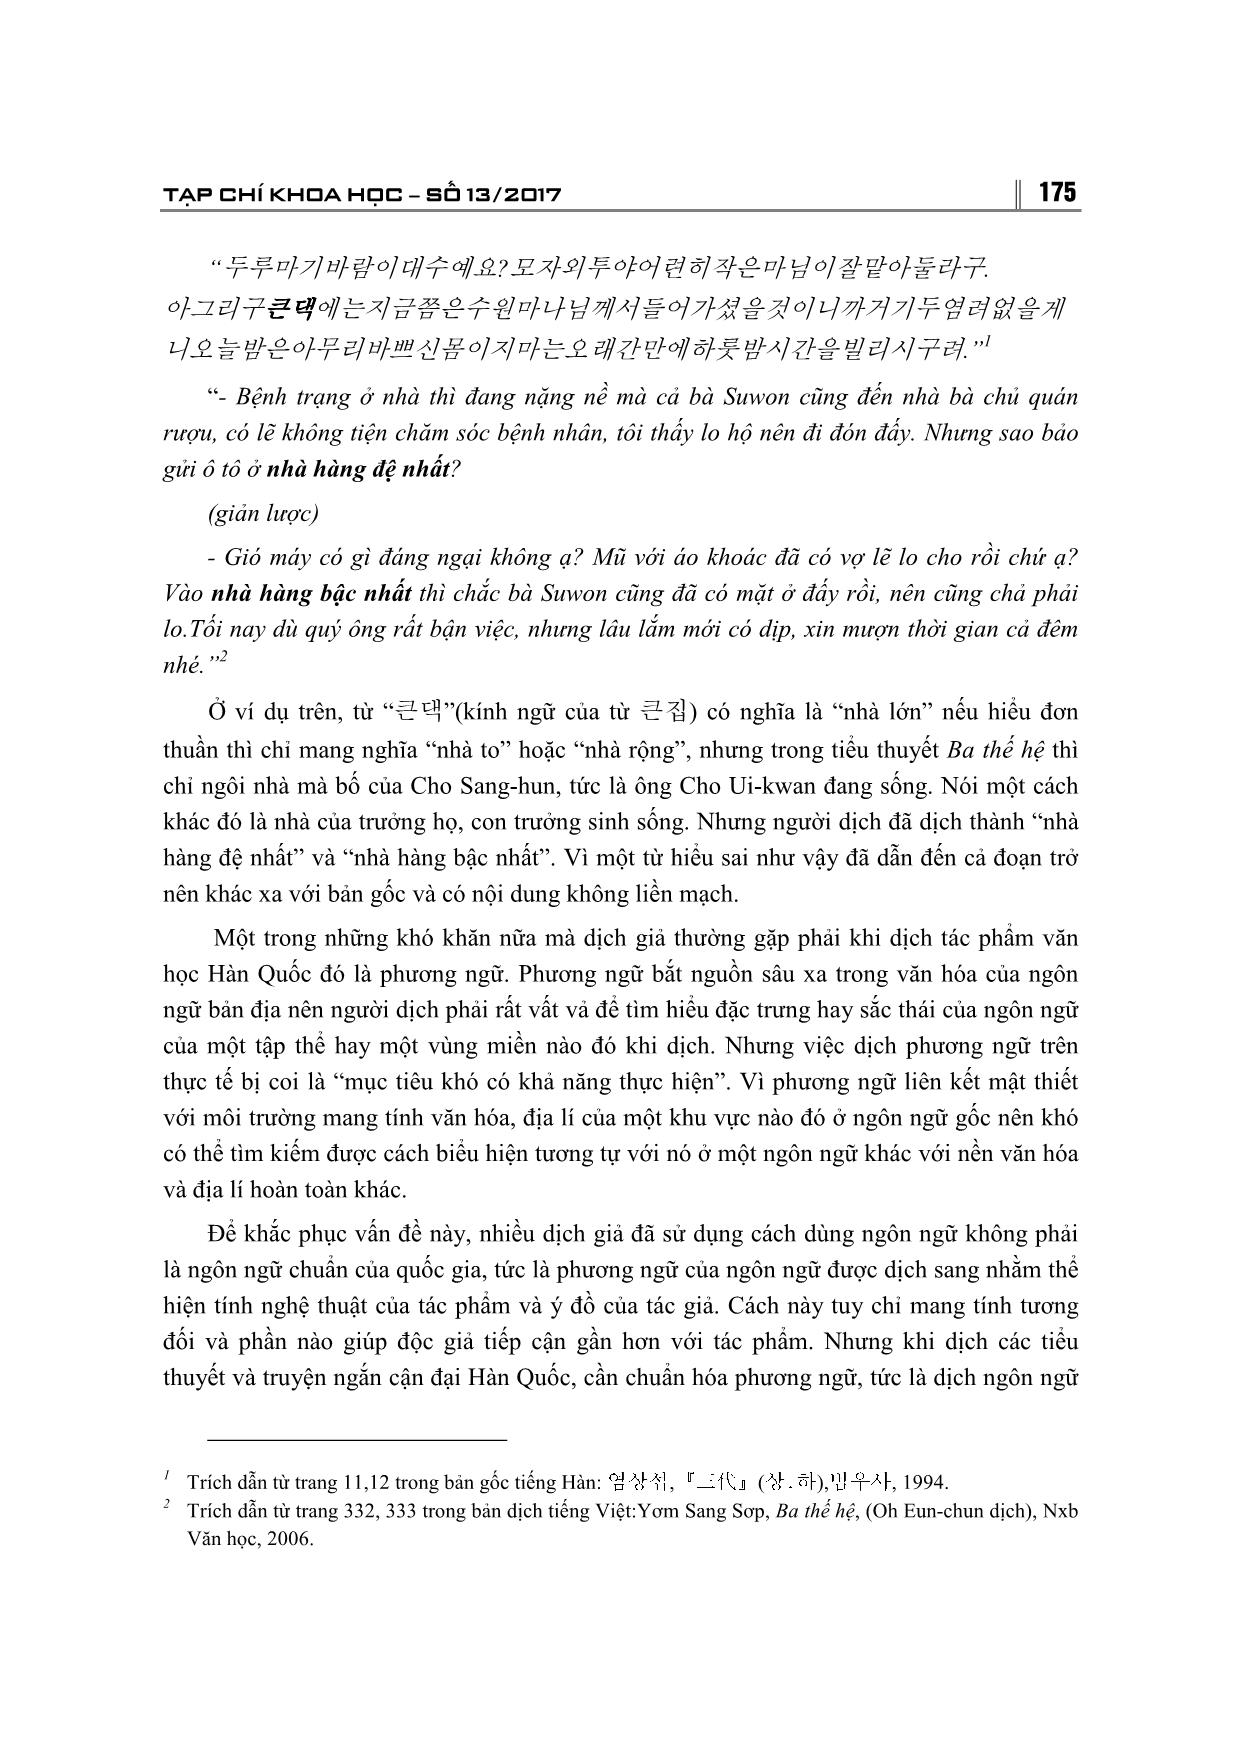 Một số hạn chế phát sinh từ yếu tố ngôn ngữ khi dịch tác phẩm văn học Hàn Quốc sang Tiếng Việt trang 9